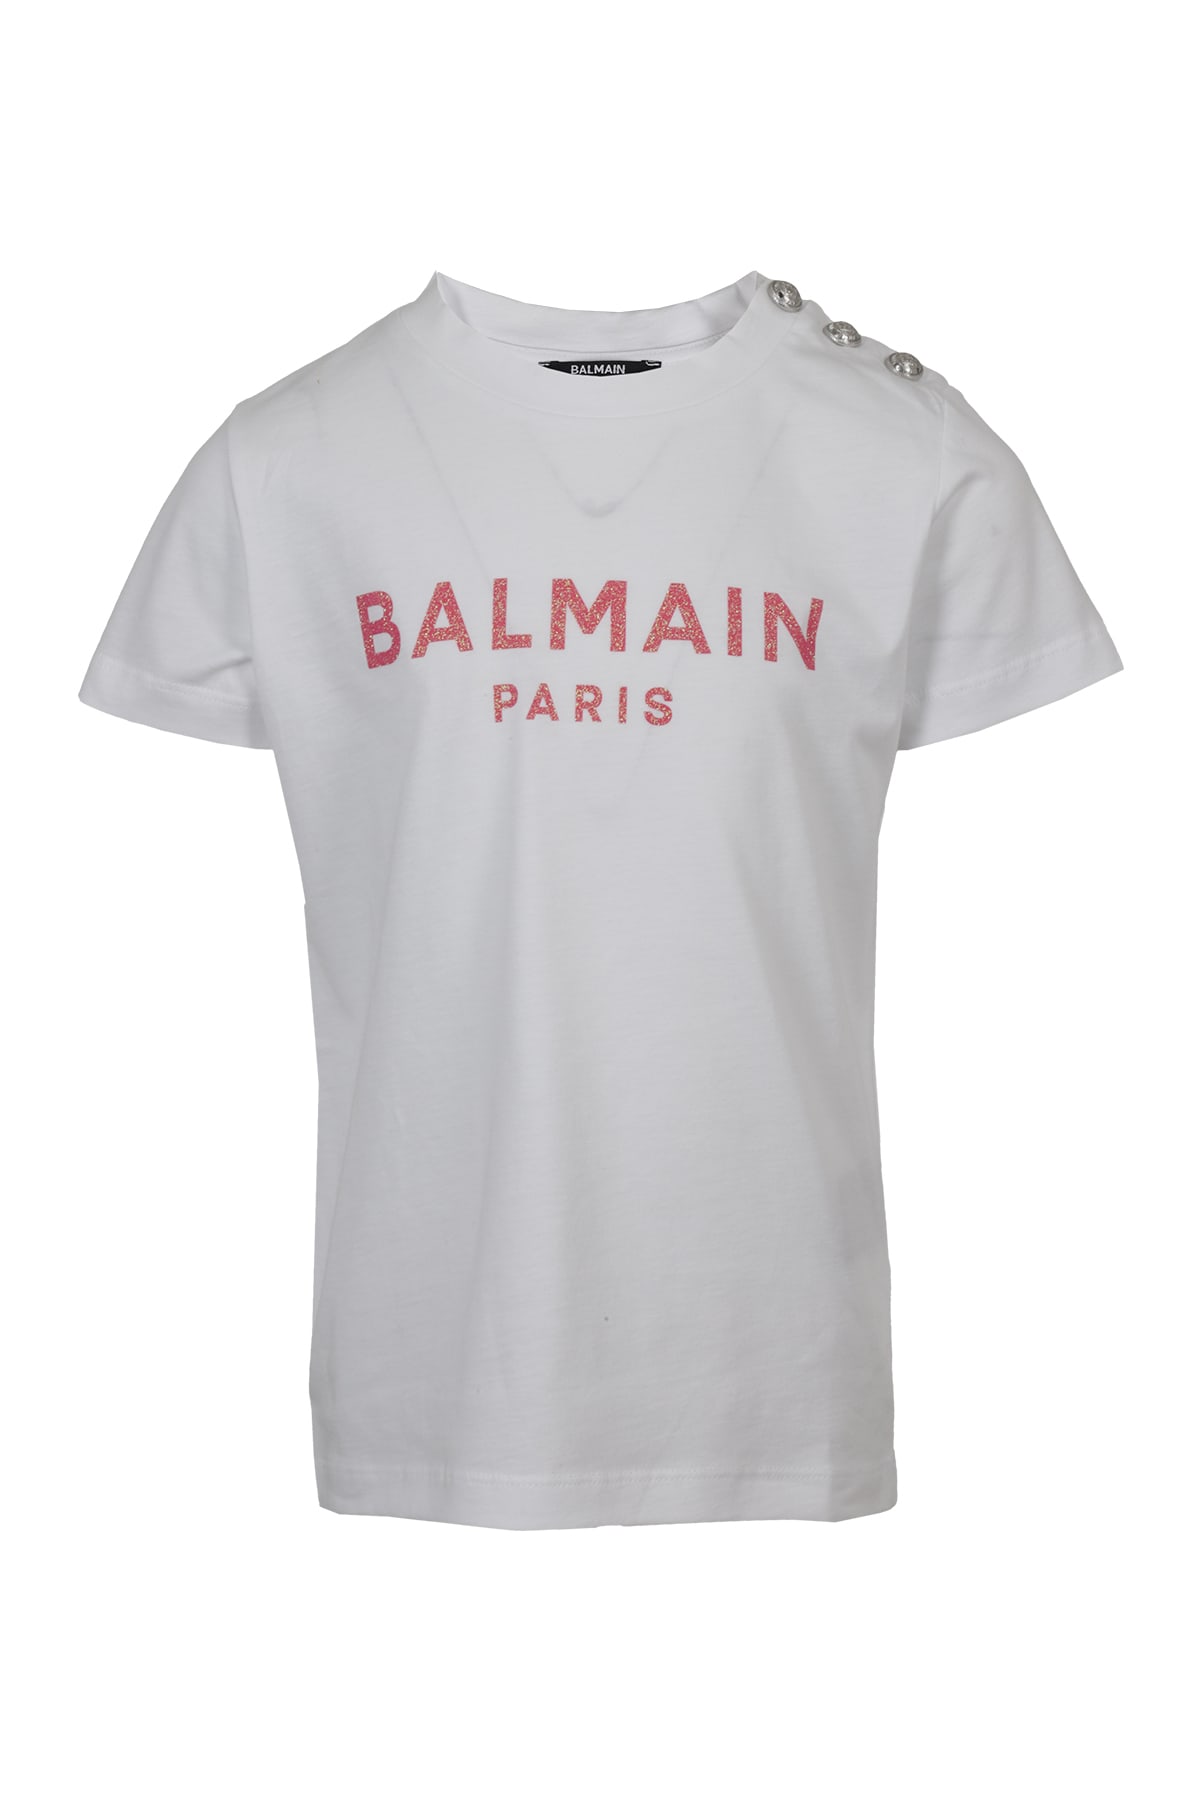 Balmain Kids' T-shirt In Fu Bianco Fuxia